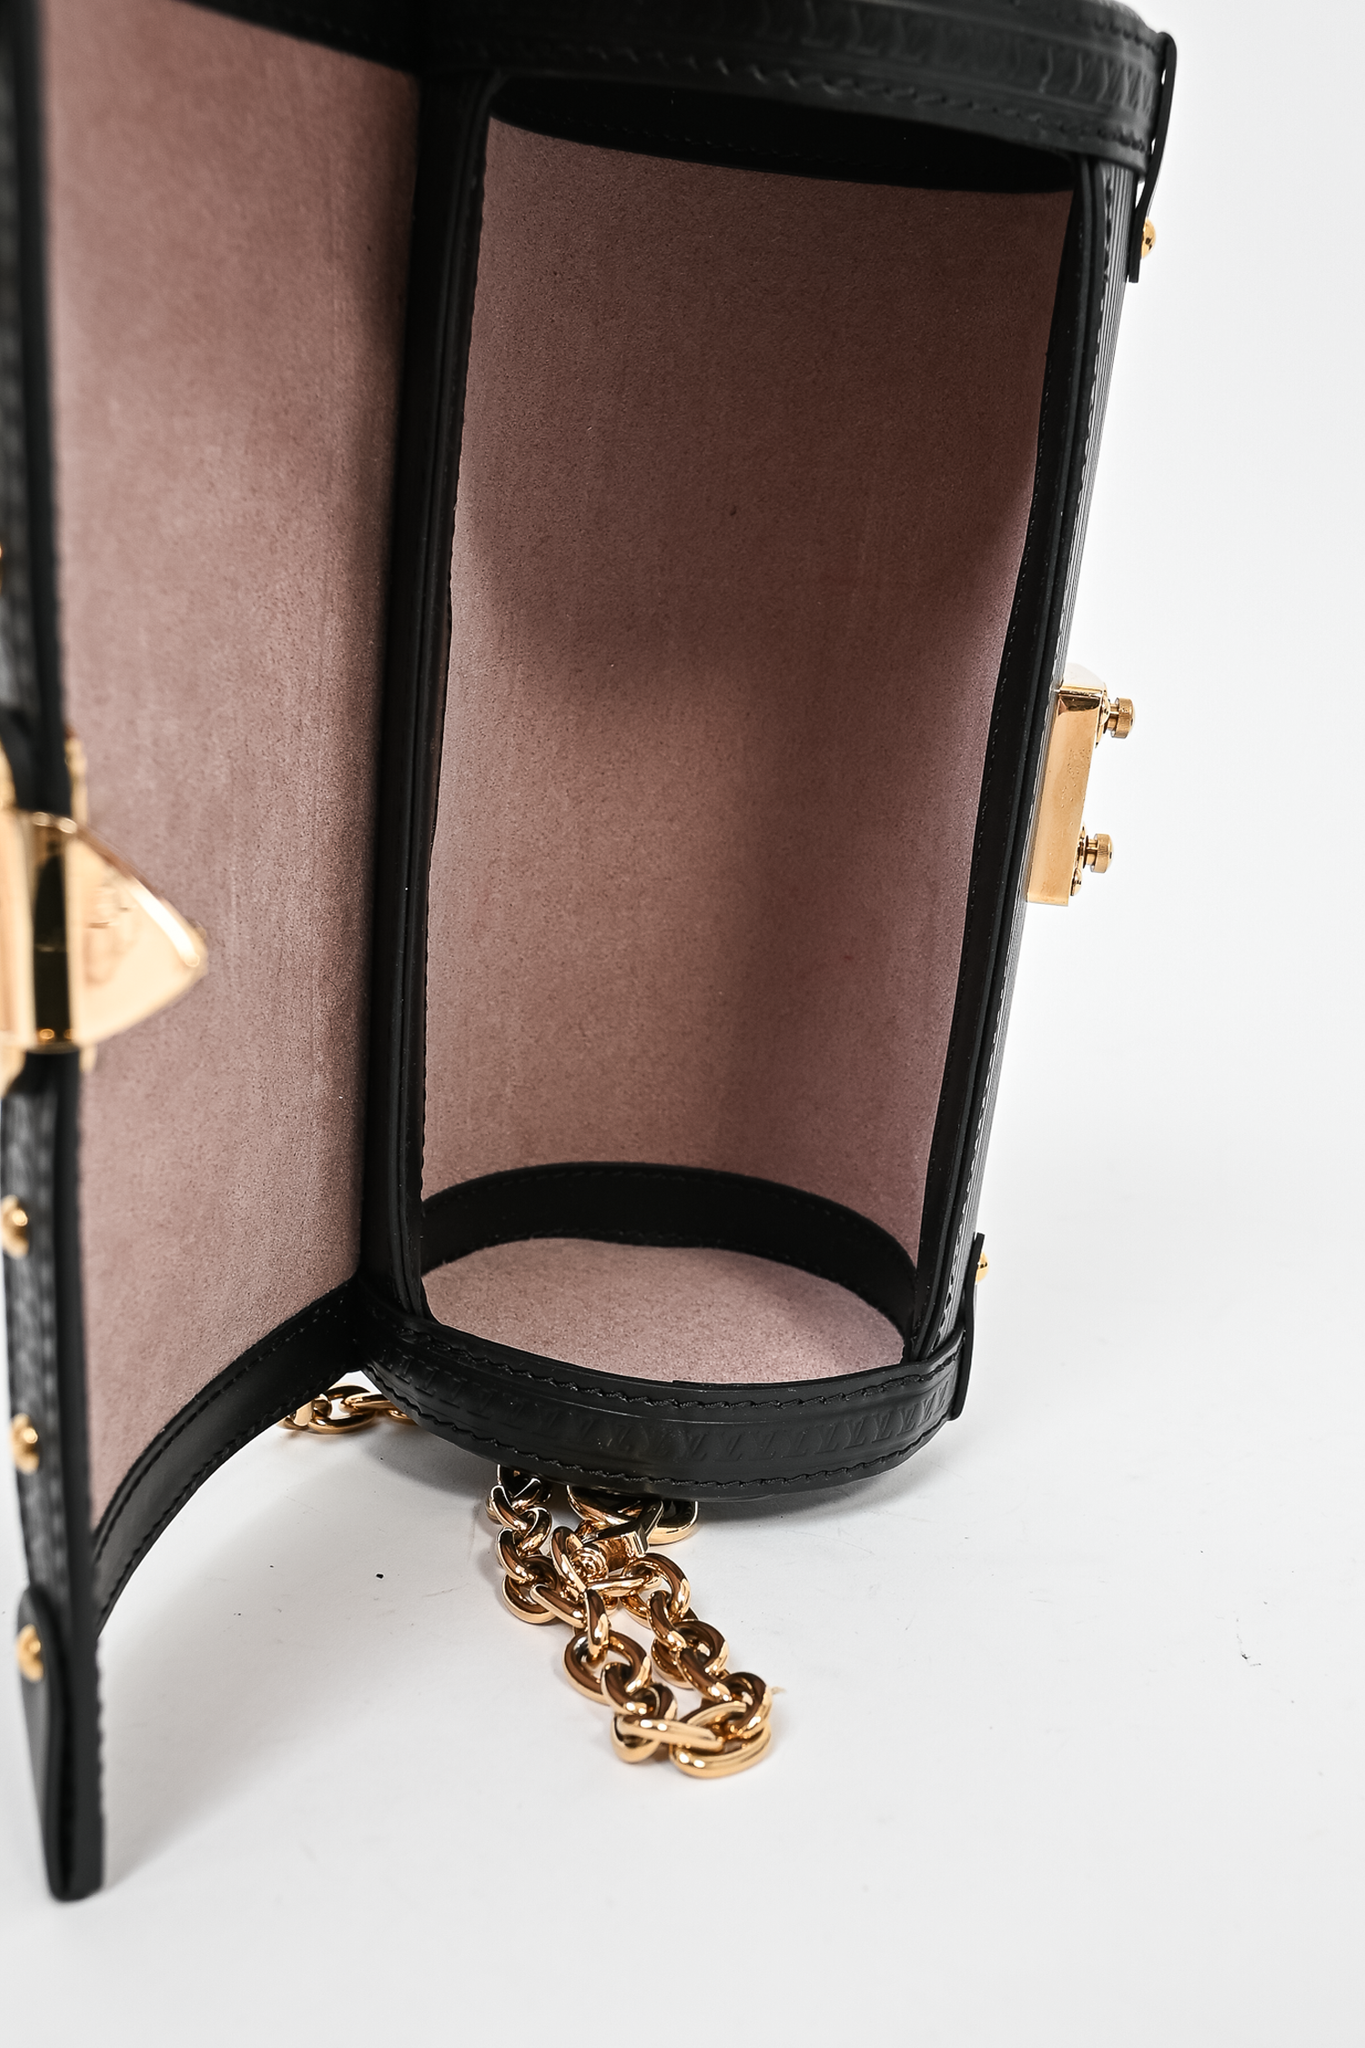 Louis Vuitton 2021 Black Epi Leather Papillon Trunk Bag w/ Chain